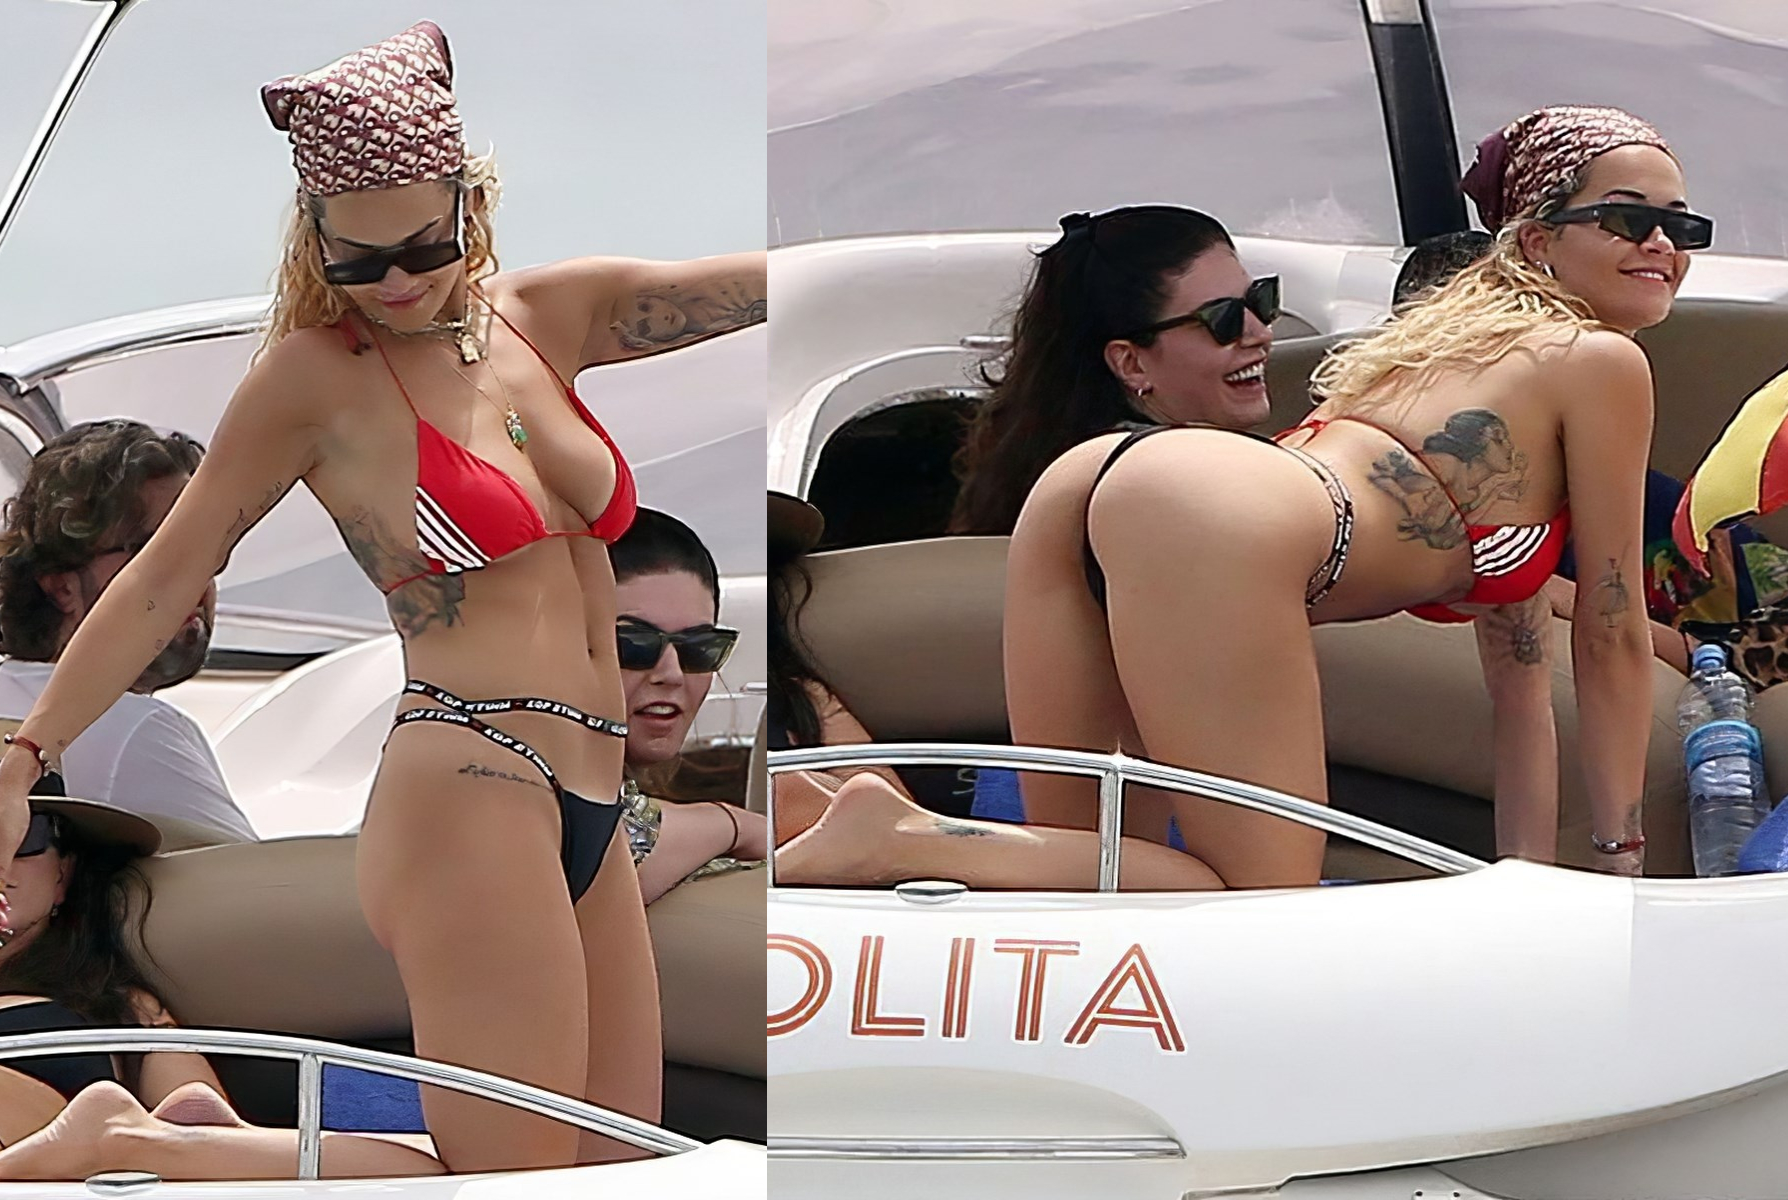 ¿Sin pudor a nada? Morbo-paparazzis pillan a Rita Ora en teniendo un “desnalgue” en el yate Lolita Express (FOTO)